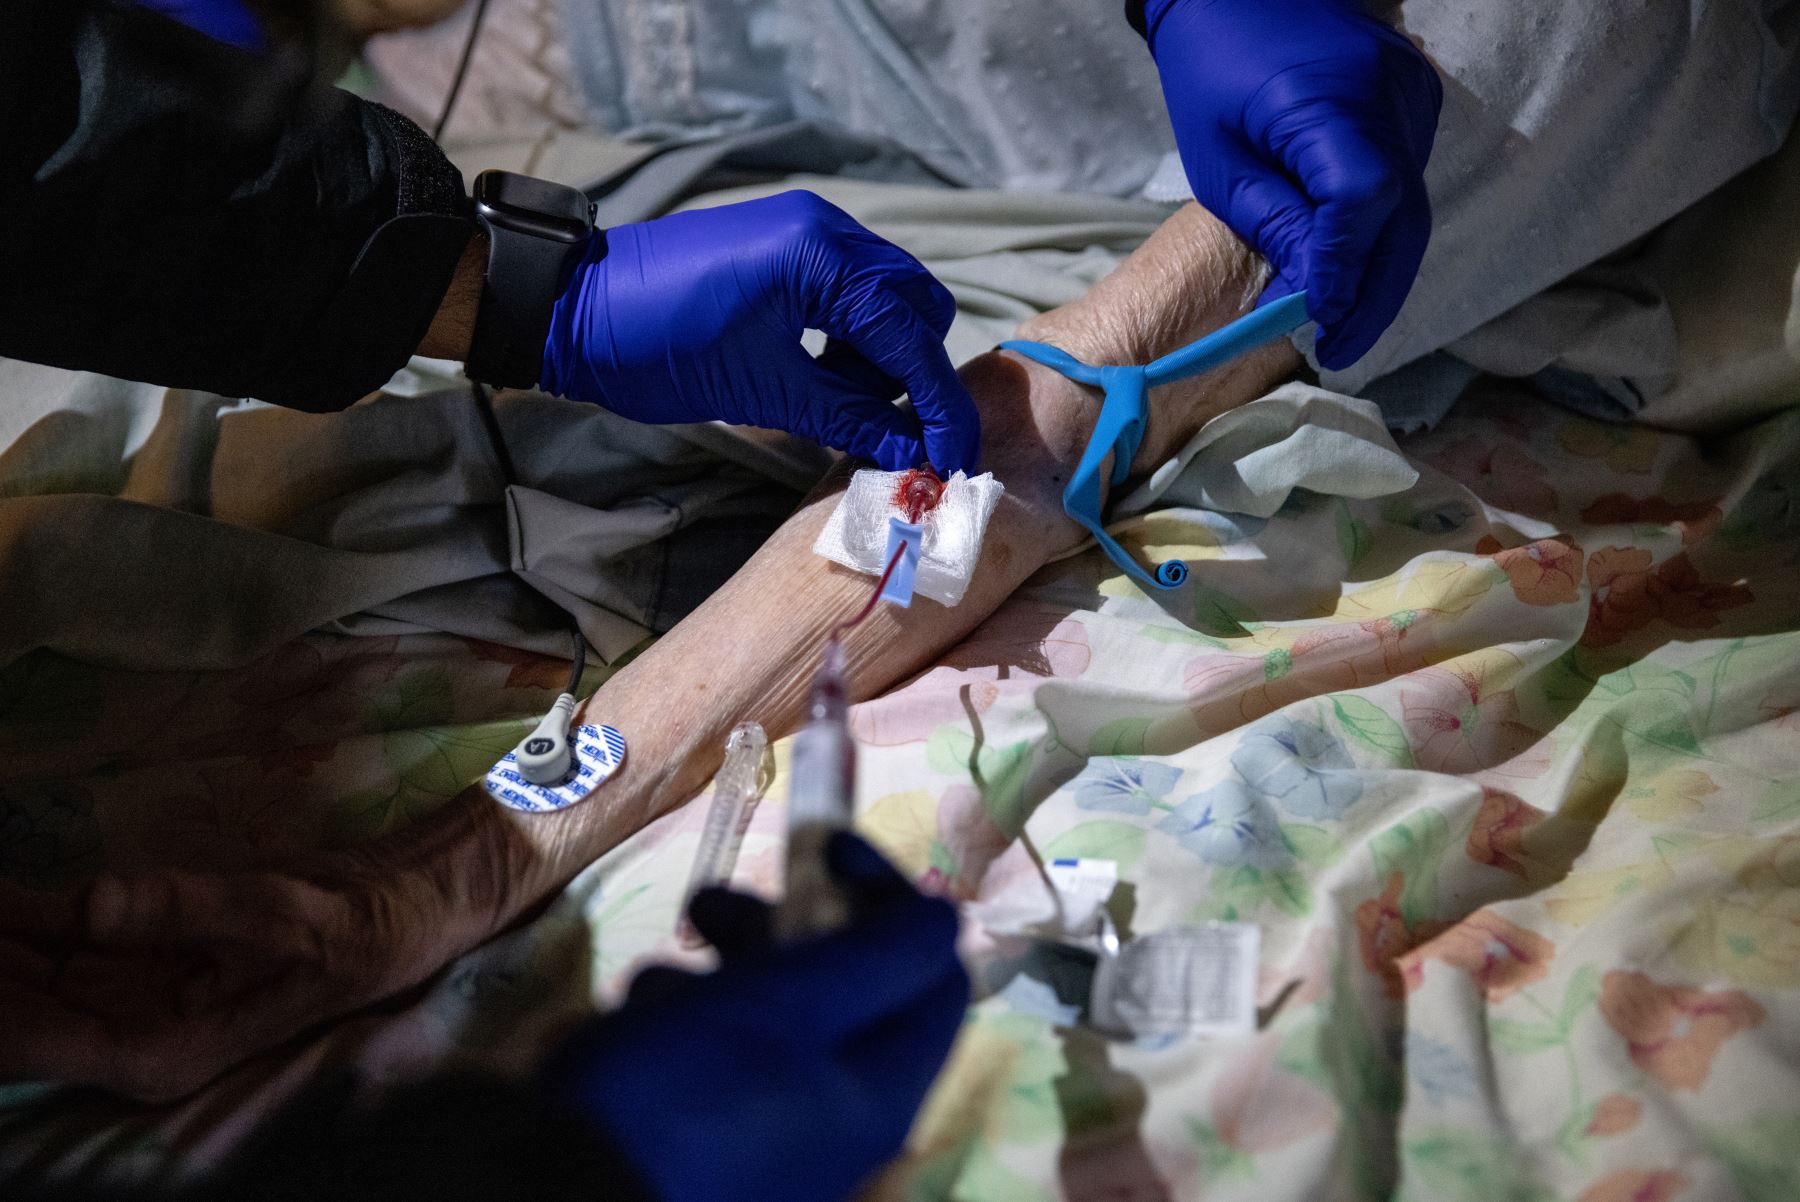 Paramédicos intentan administrar medicamentos a una mujer después de evaluarla para detectar síntomas de Covid-19 en Yonkers, Nueva York. Foto: AFP